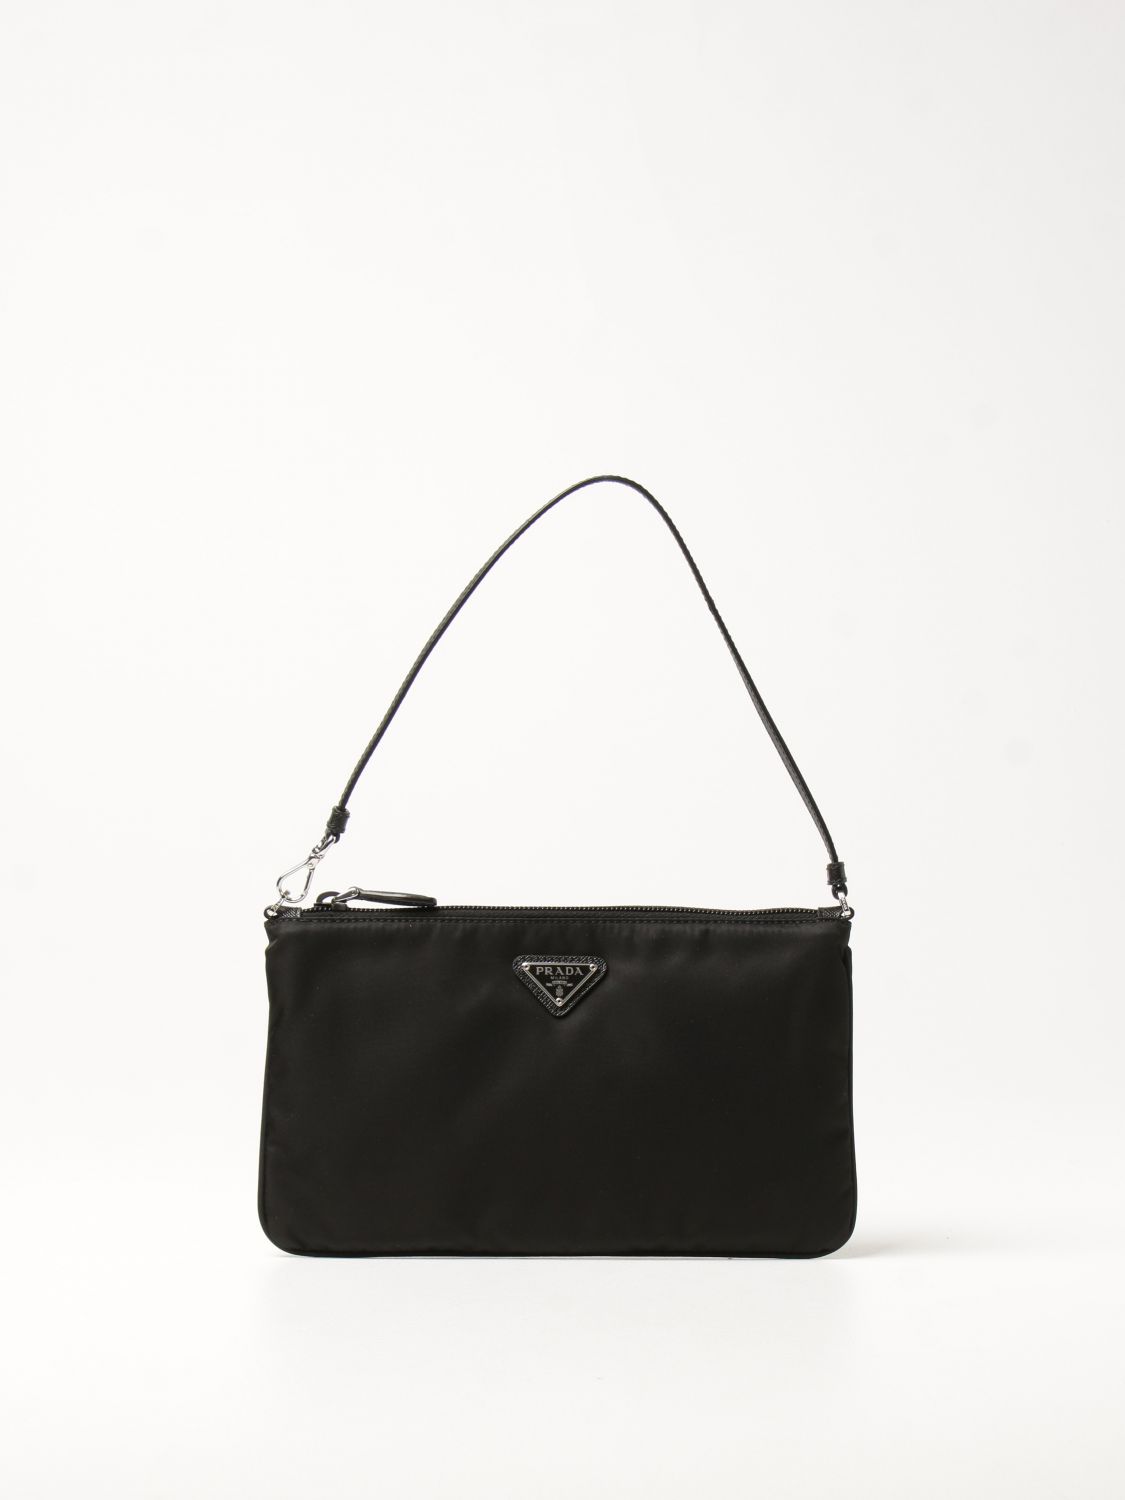 PRADA: nylon handbag with triangular logo - Black | Prada handbag 1NI545  R067 online on 